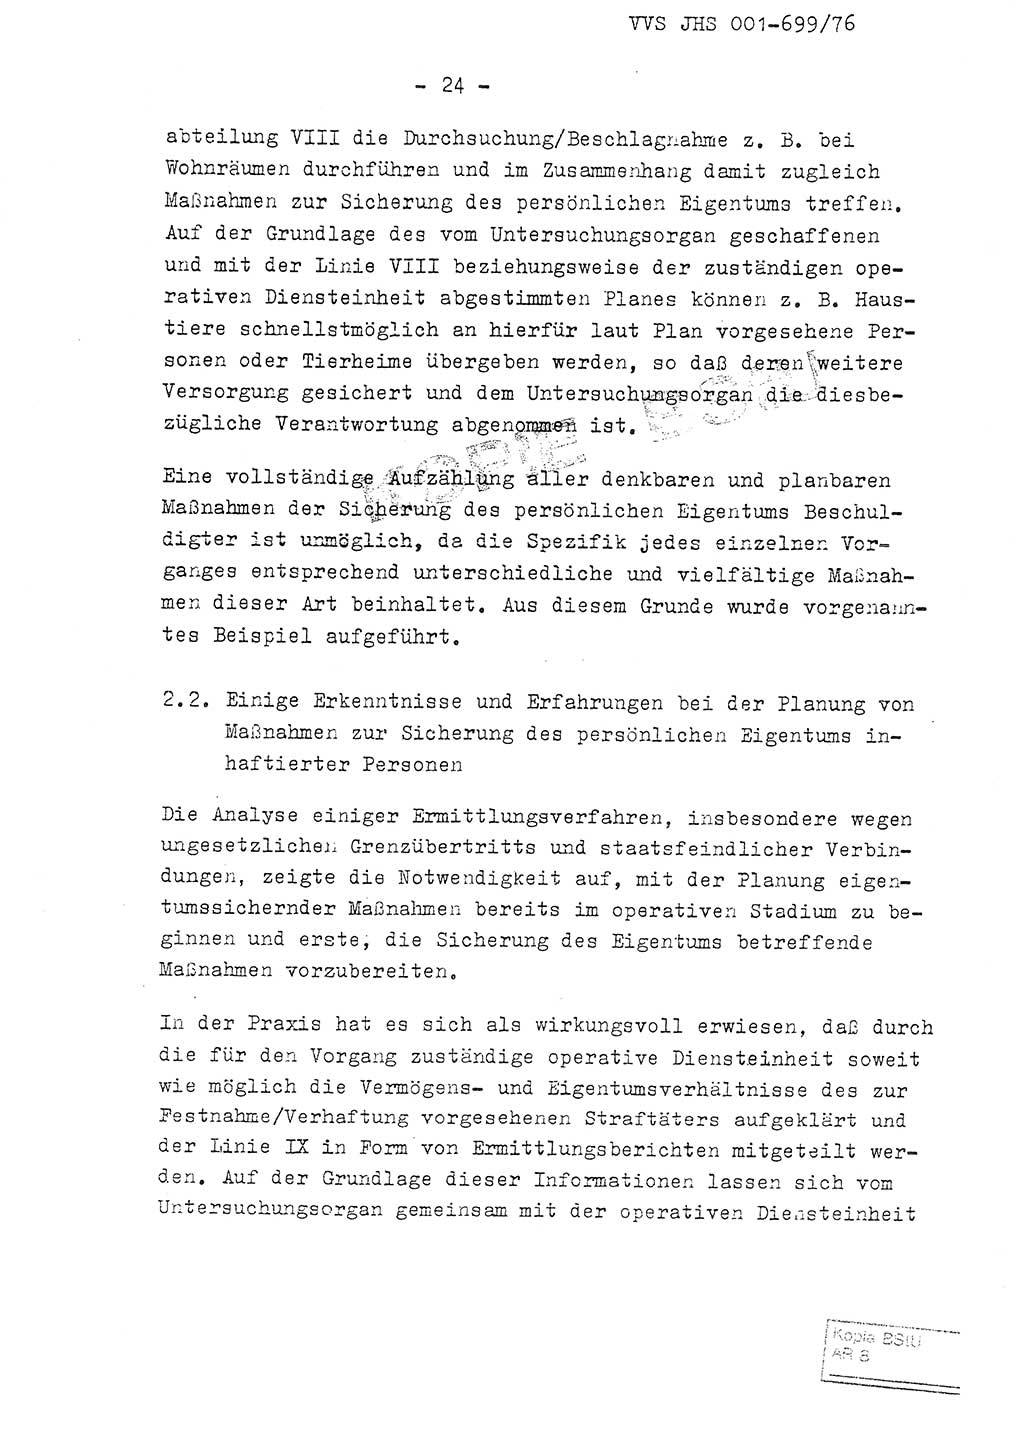 Fachschulabschlußarbeit Leutnant Volkmar Taubert (HA Ⅸ/9), Leutnant Axel Naumann (HA Ⅸ/9), Unterleutnat Detlef Debski (HA Ⅸ/9), Ministerium für Staatssicherheit (MfS) [Deutsche Demokratische Republik (DDR)], Juristische Hochschule (JHS), Vertrauliche Verschlußsache (VVS) 001-699/76, Potsdam 1976, Seite 24 (FS-Abschl.-Arb. MfS DDR JHS VVS 001-699/76 1976, S. 24)